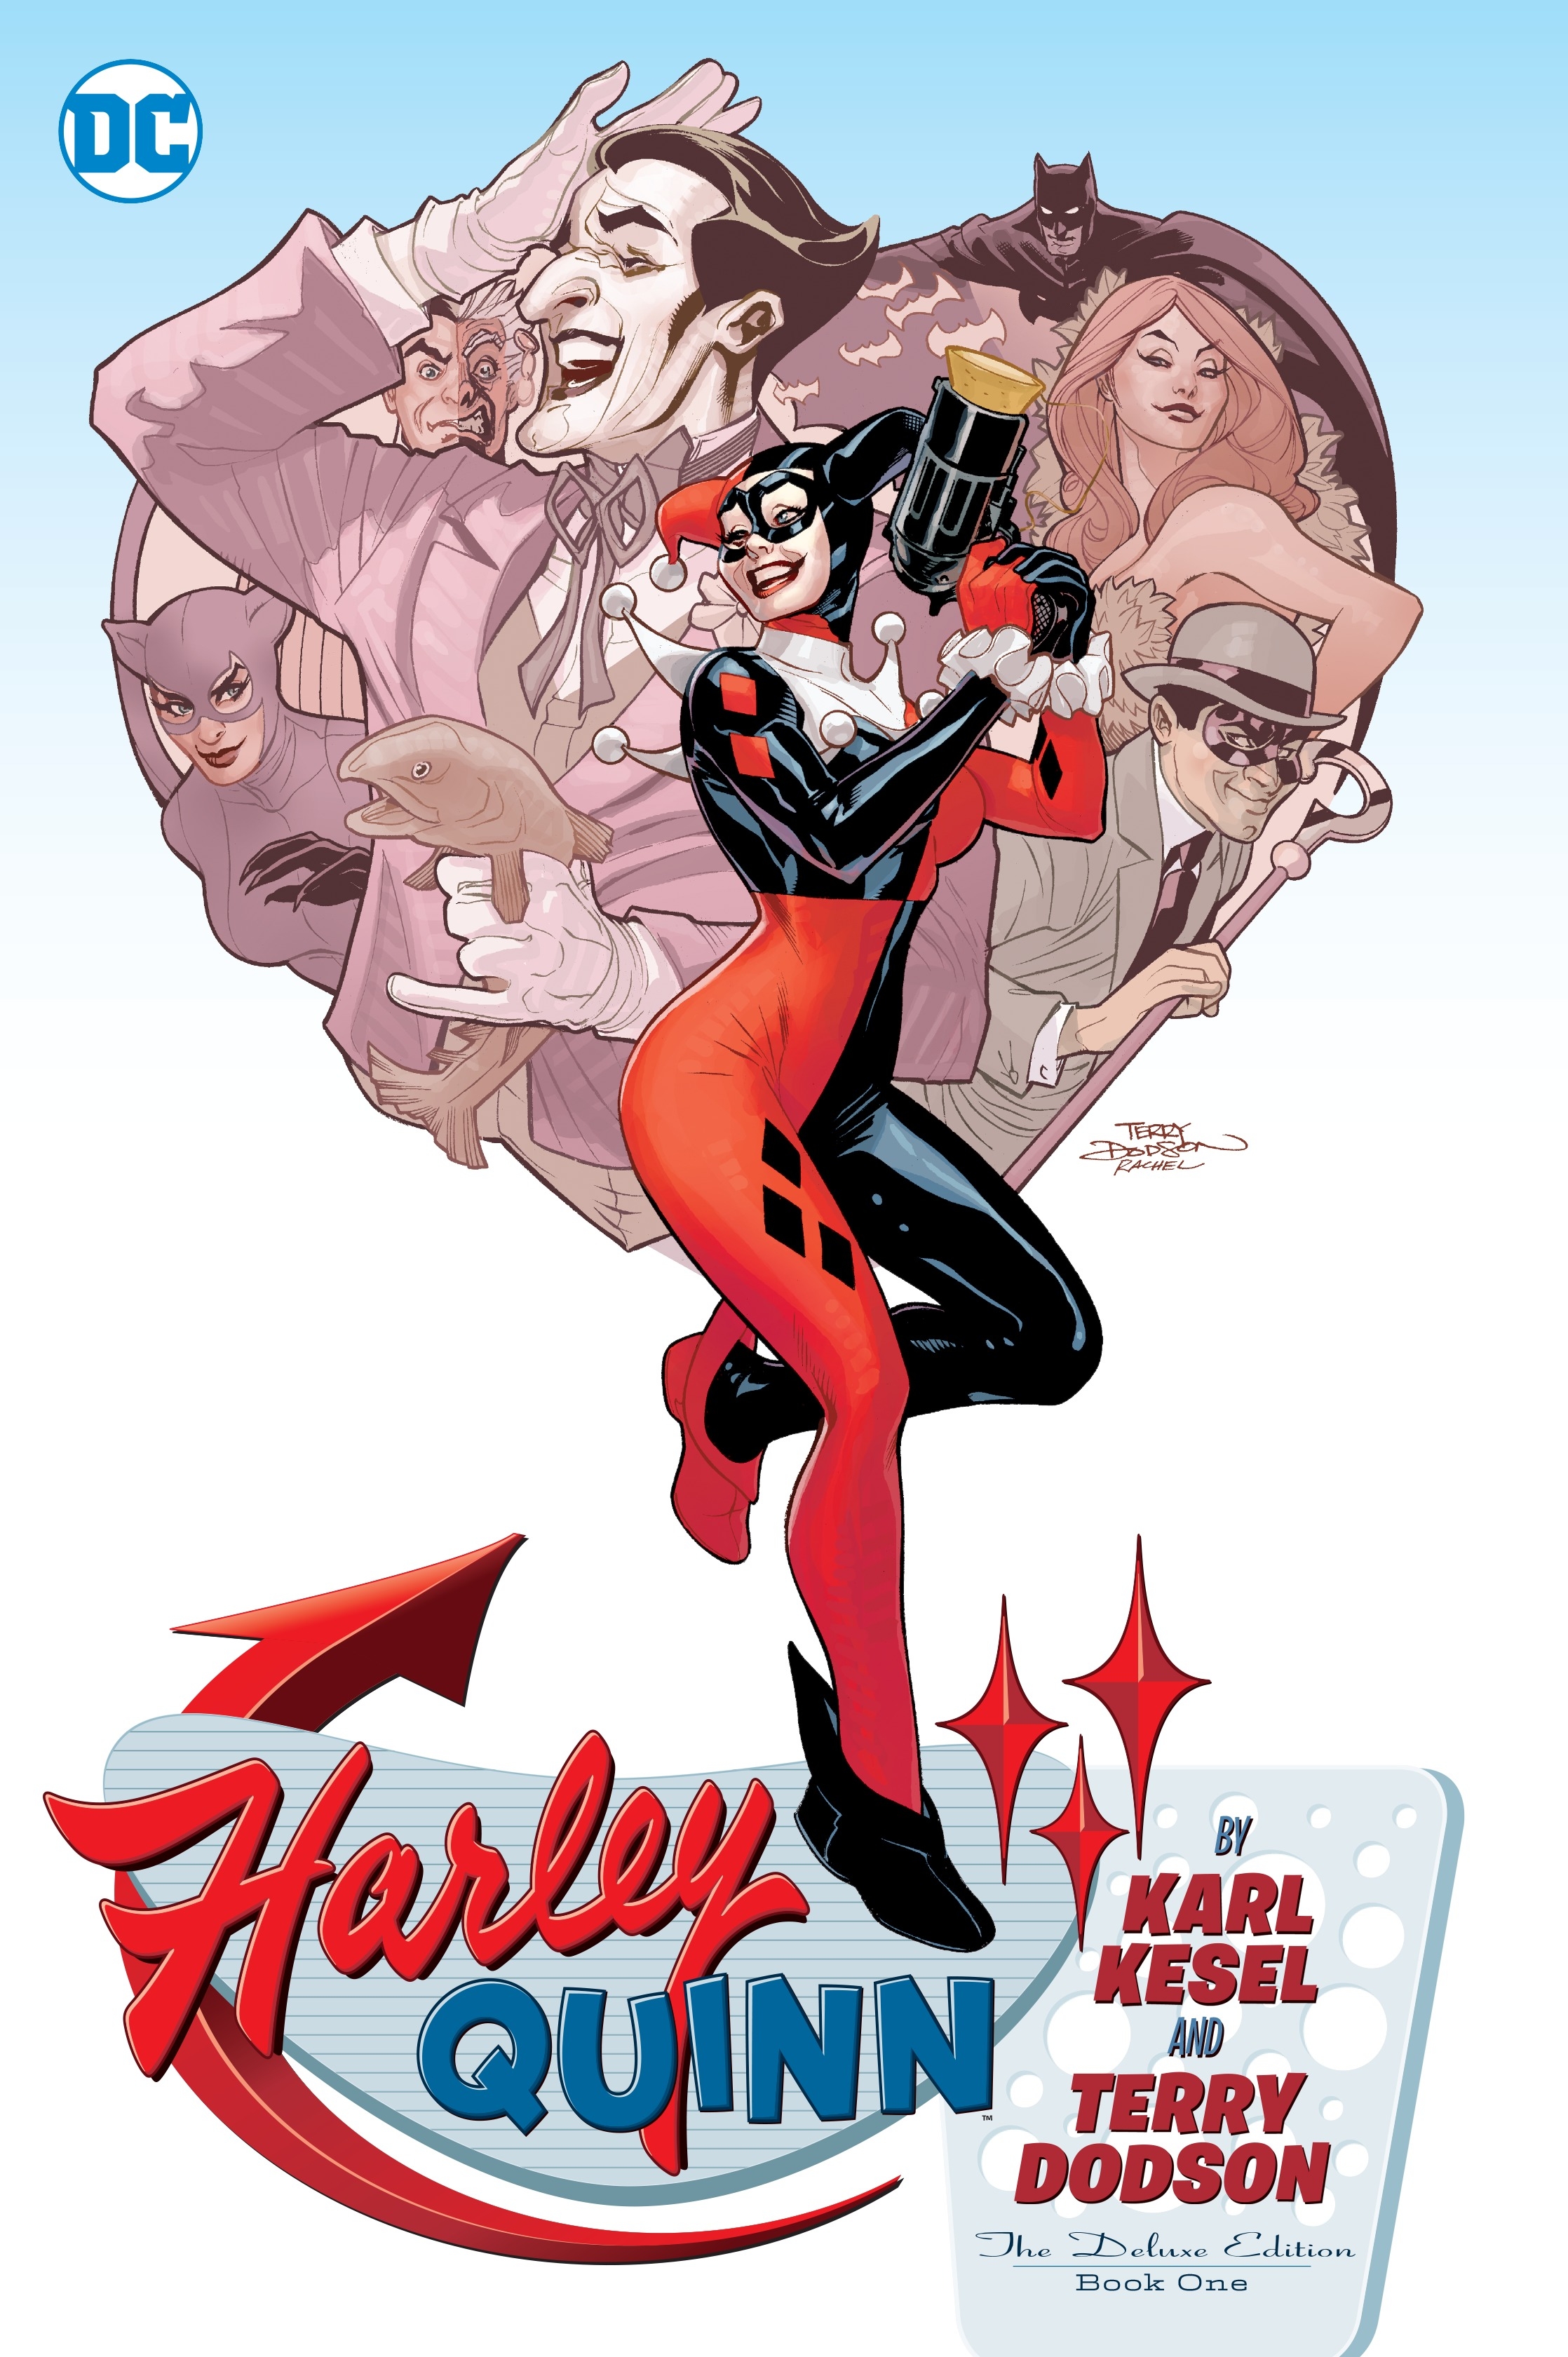 Harley Quinn, Vol. 3 by Karl Kesel